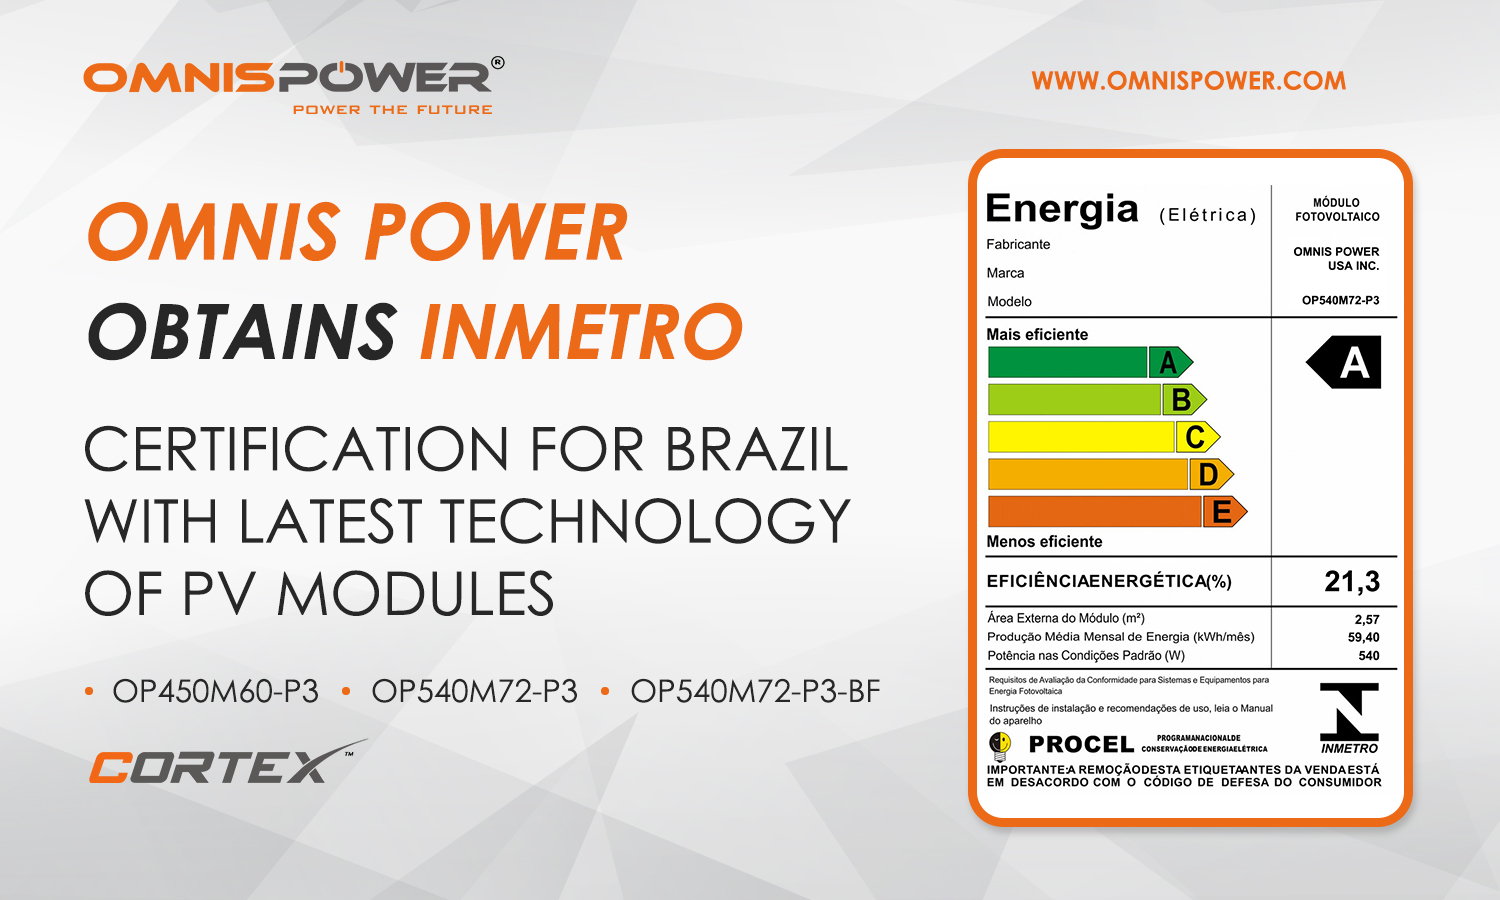 Omnis Power cherries INMETRO Certification For Entering the Brazilian Market.